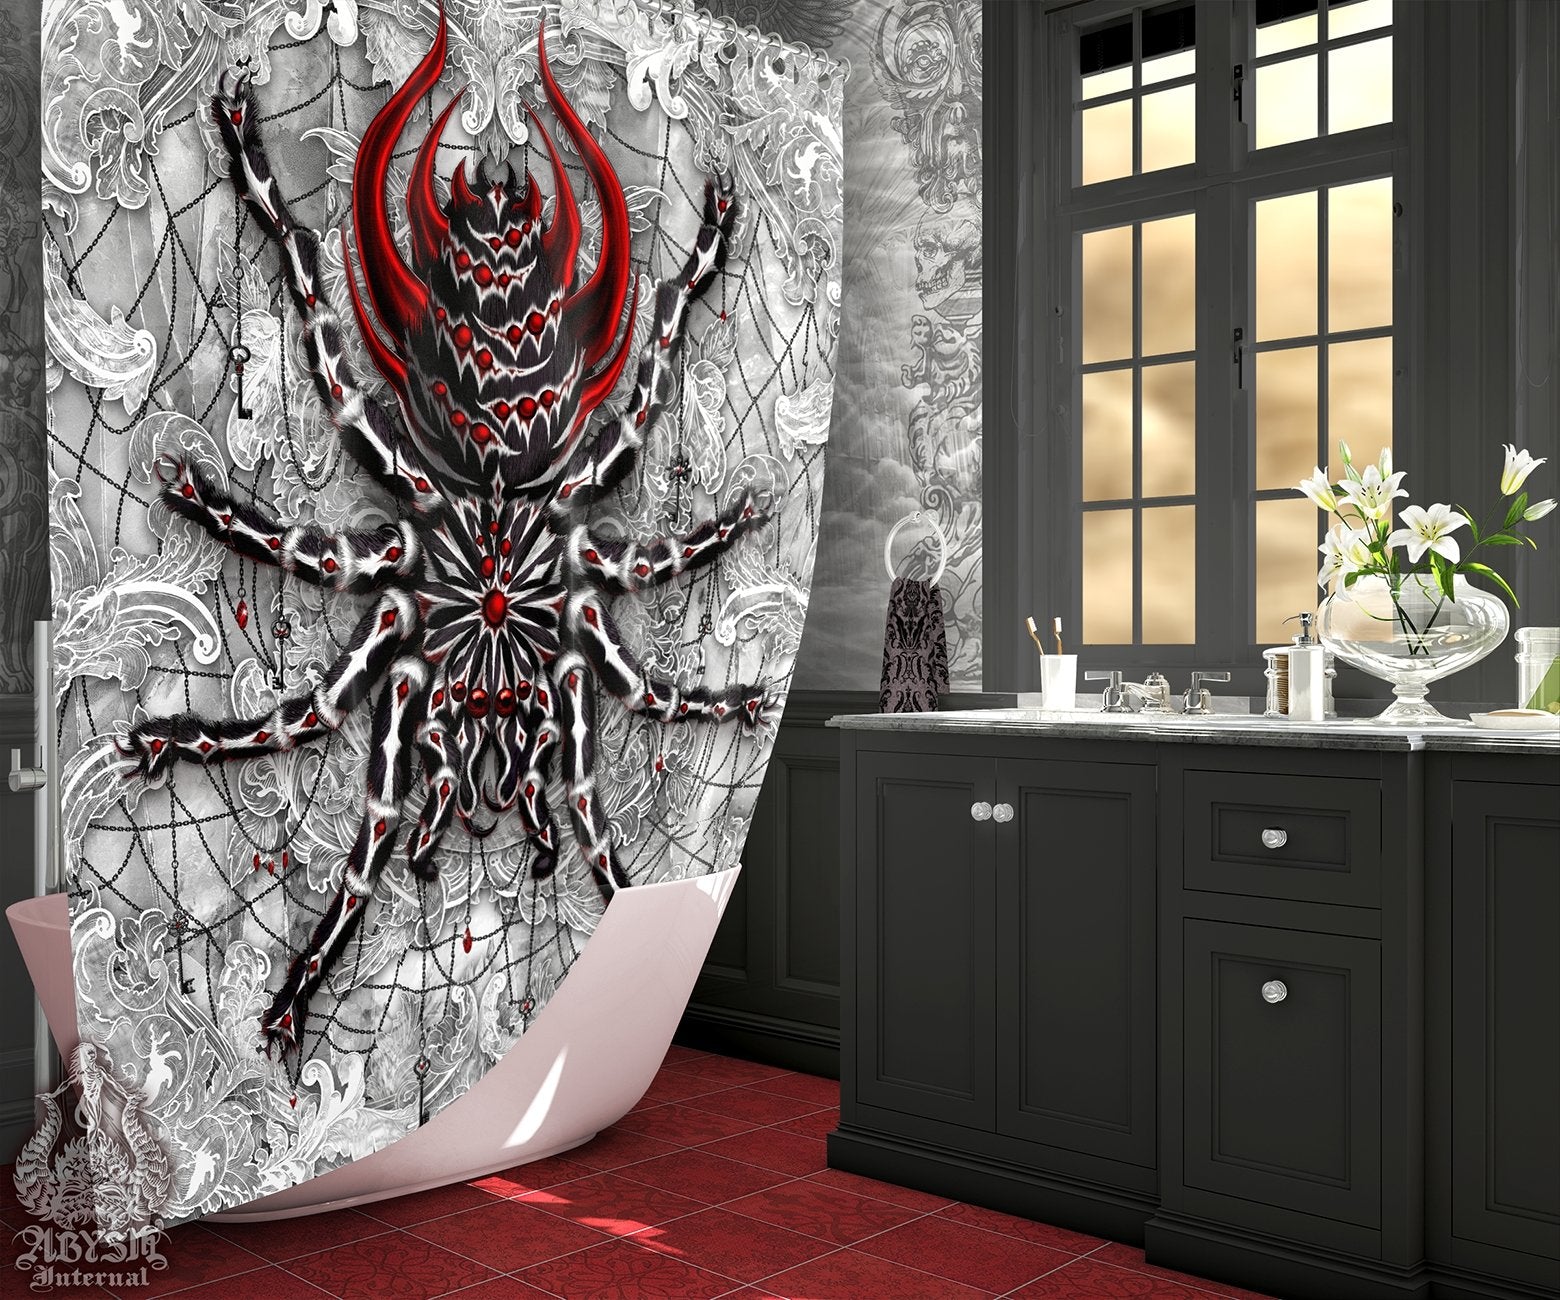 Spider Shower Curtain, Gothic Bathroom Decor, White Goth, Alternative Home - Spider, Stone Red, Tarantula Art - Abysm Internal